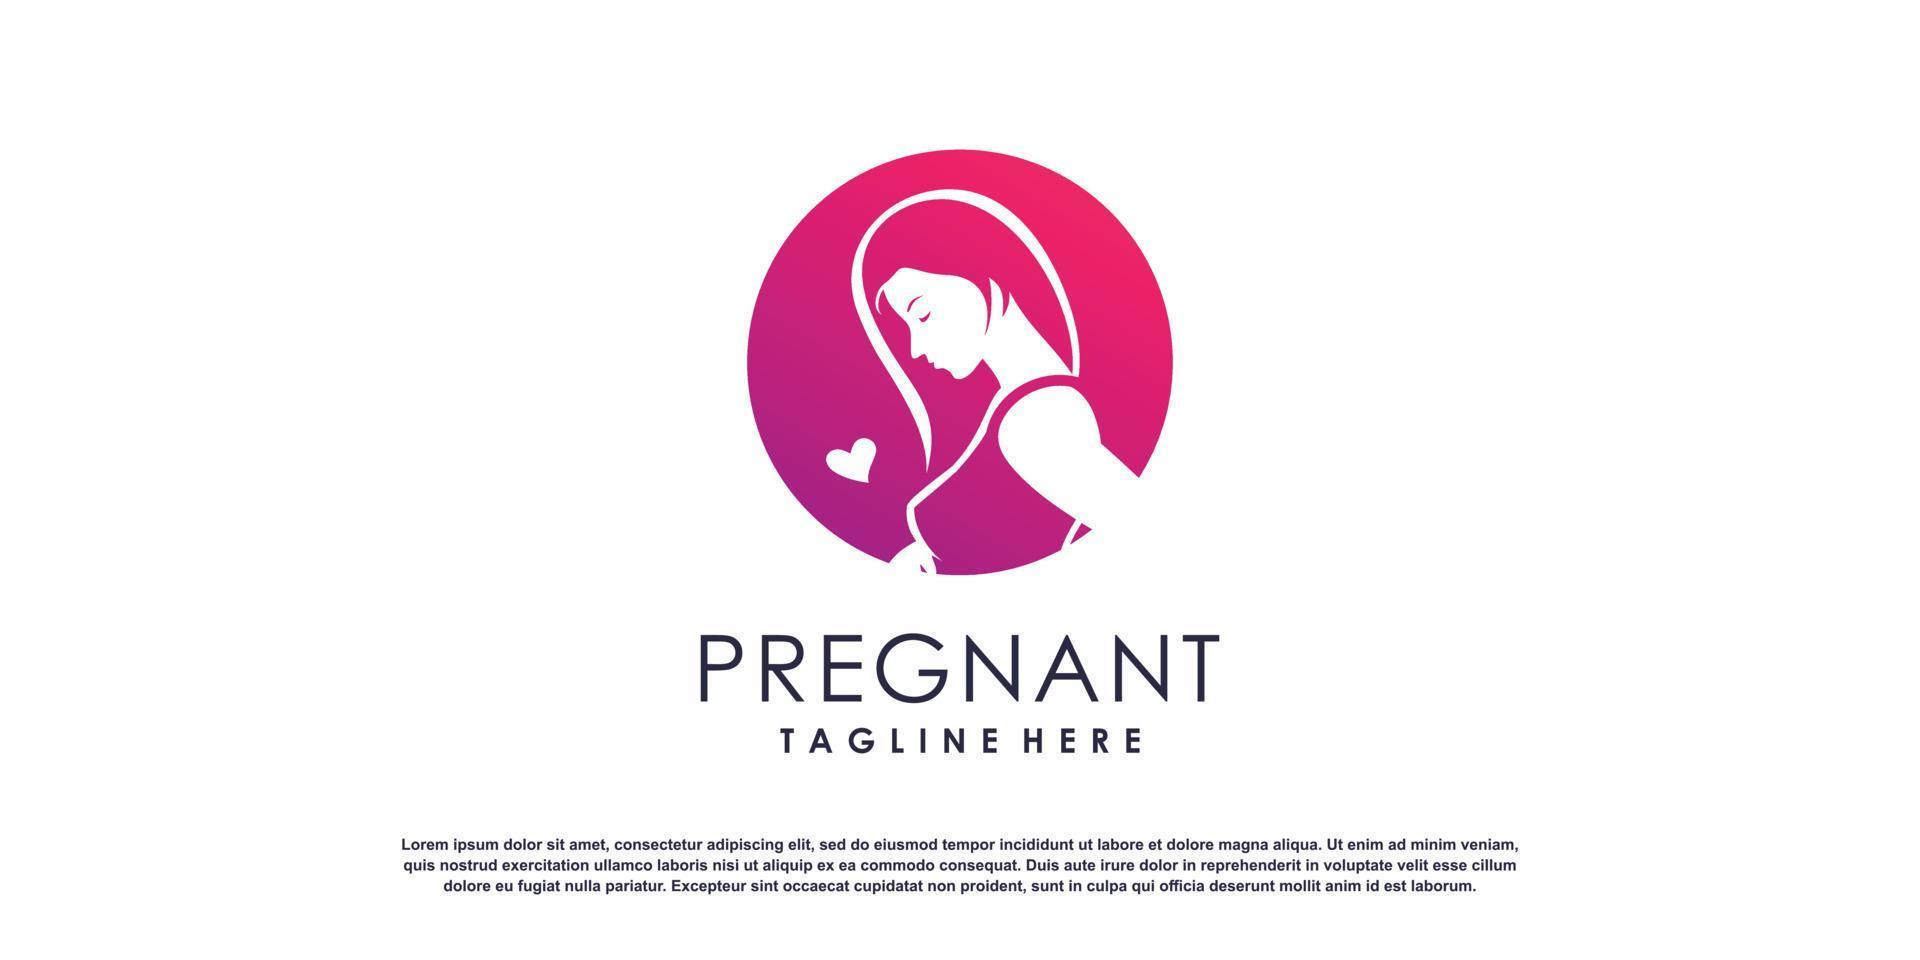 Pregnant logo design vector with modern concept